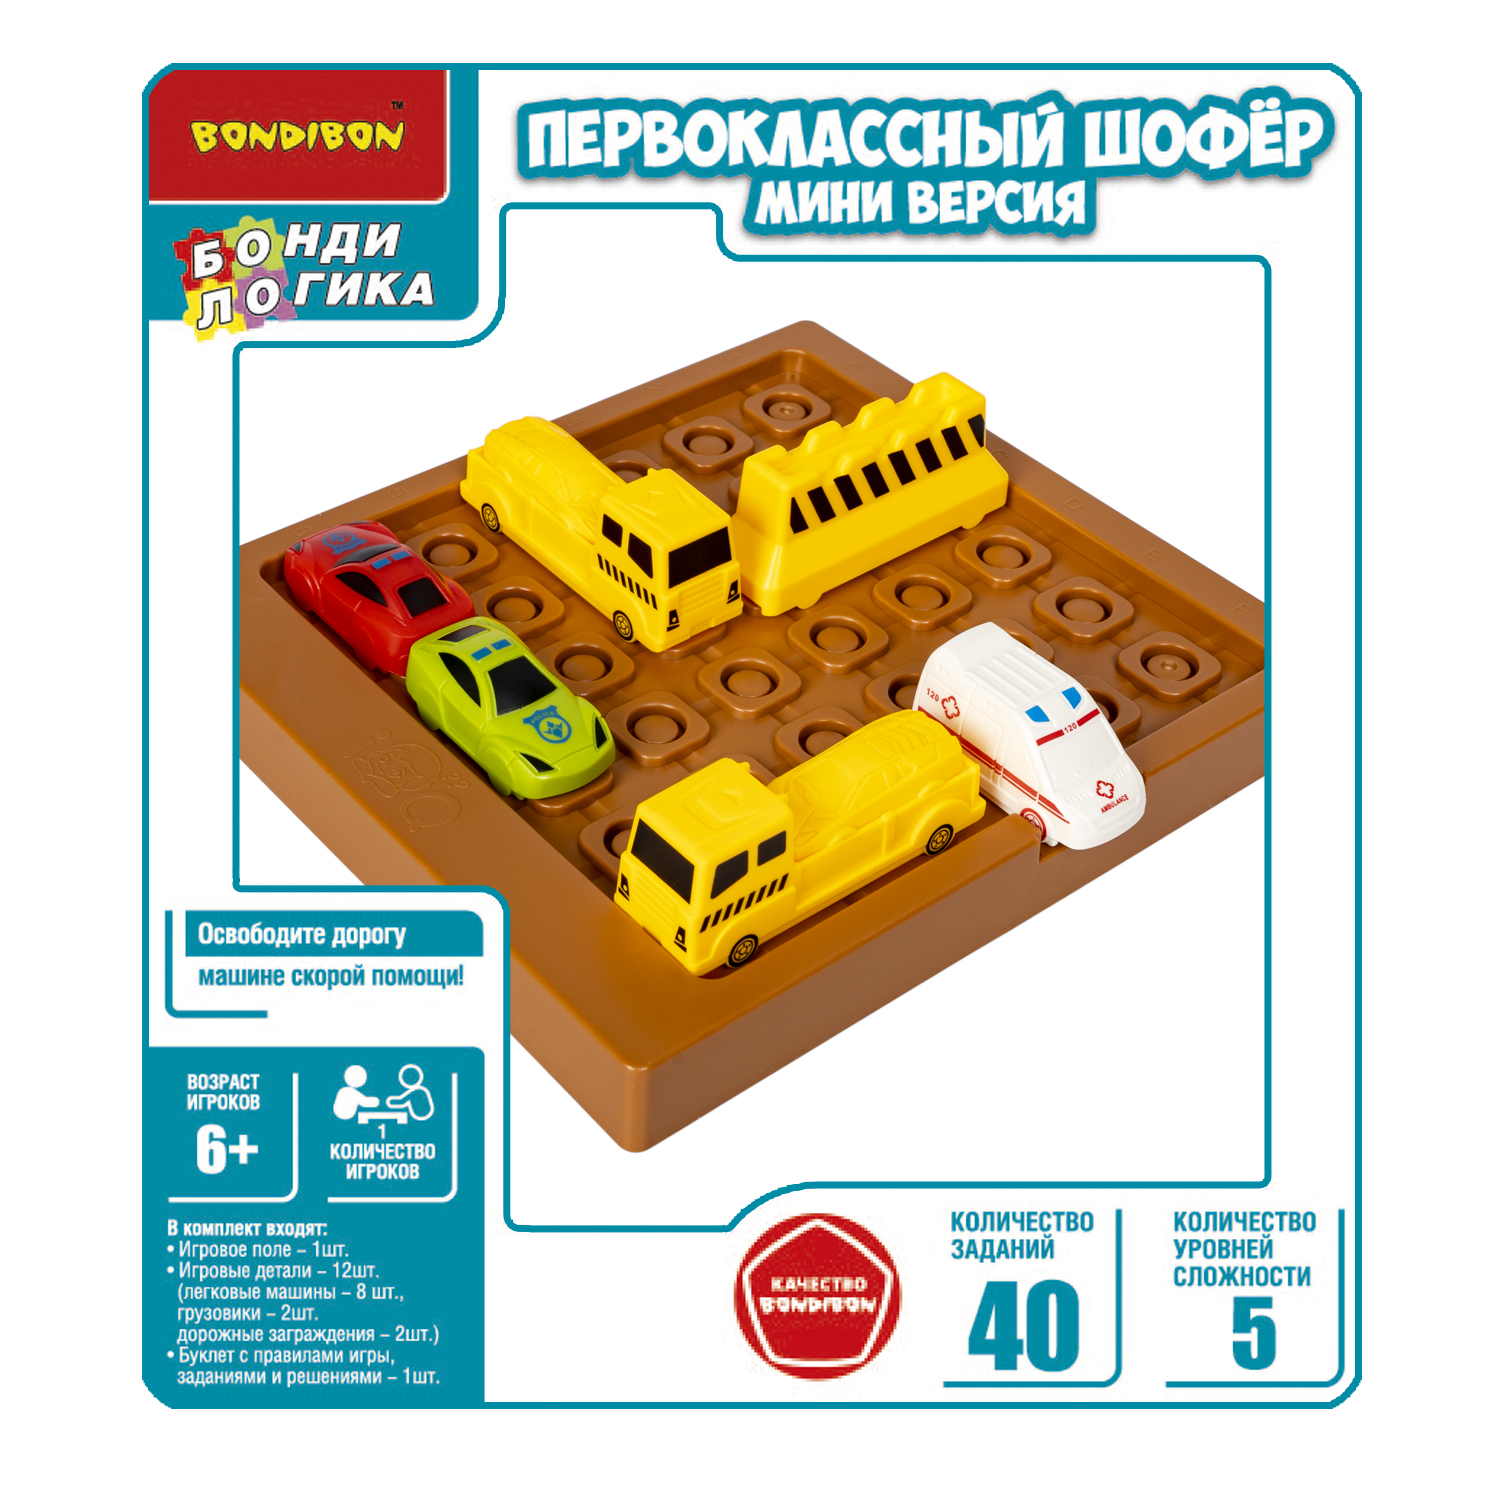 Настольная логическая игра BONDIBON головоломка Первоклассный шофер мини версия серия БондиЛогика - фото 2